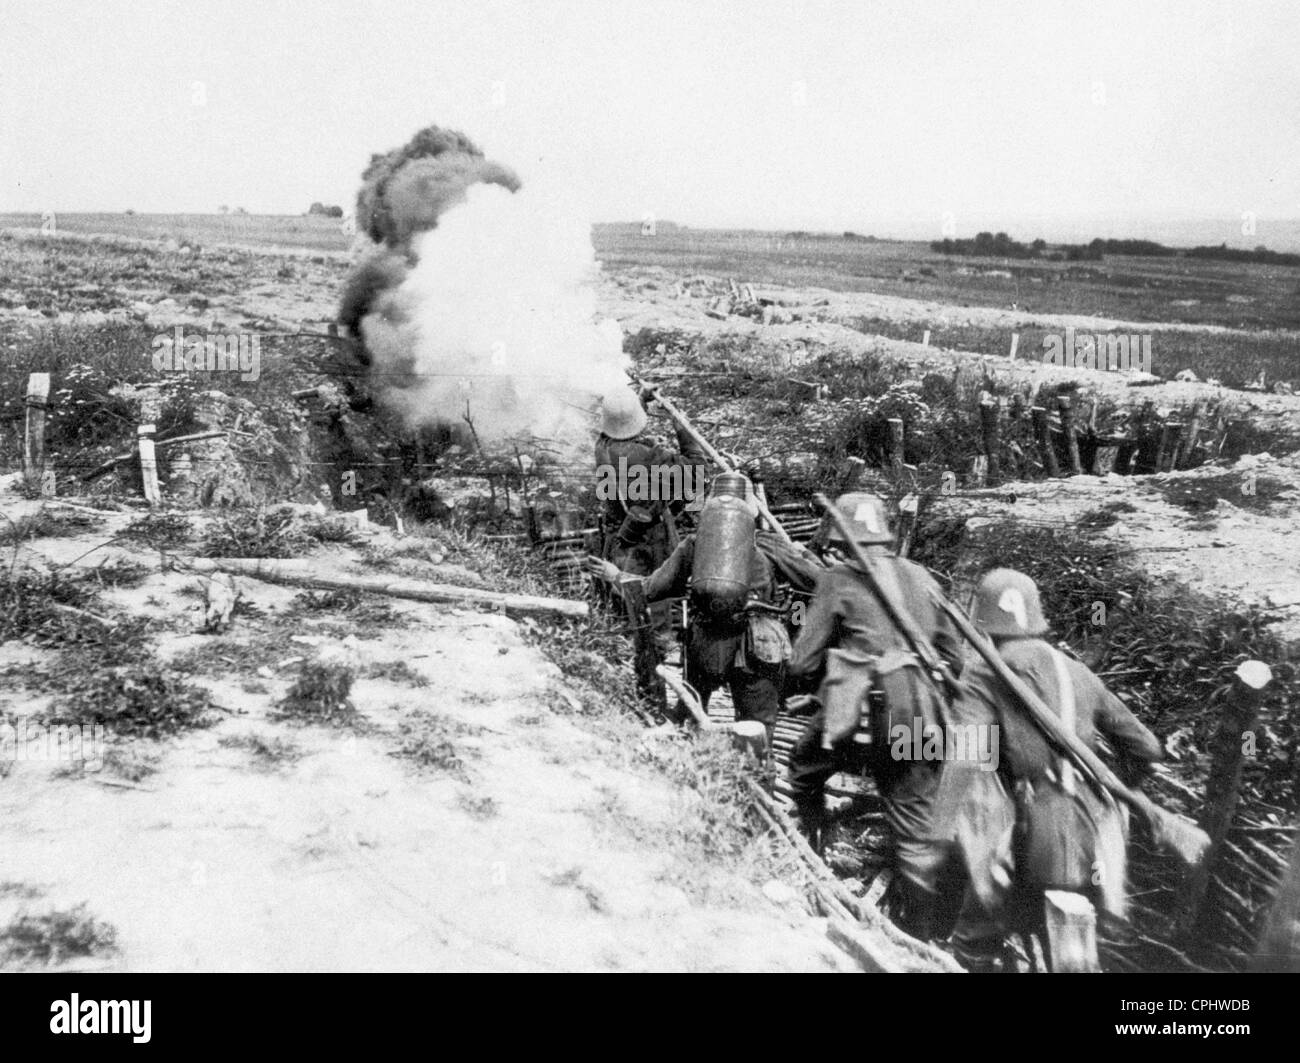 Les soldats allemands pour former une attaque avec des lances flammes, 1915 Banque D'Images